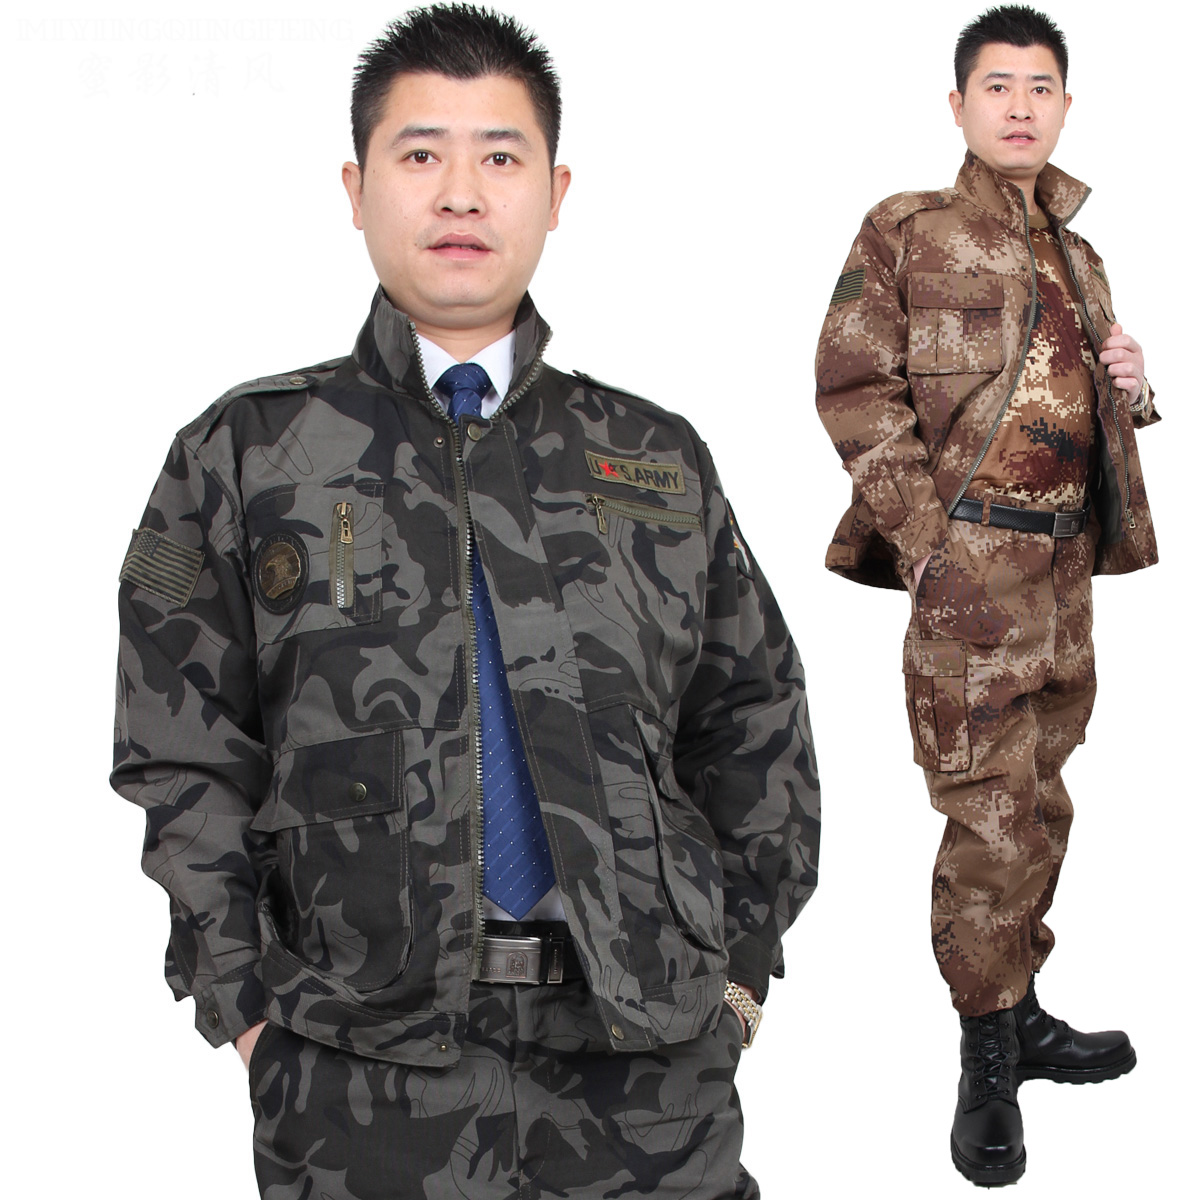 奥诗雨户外迷彩服套装 狩猎服 工作服 作训服套装 训练服